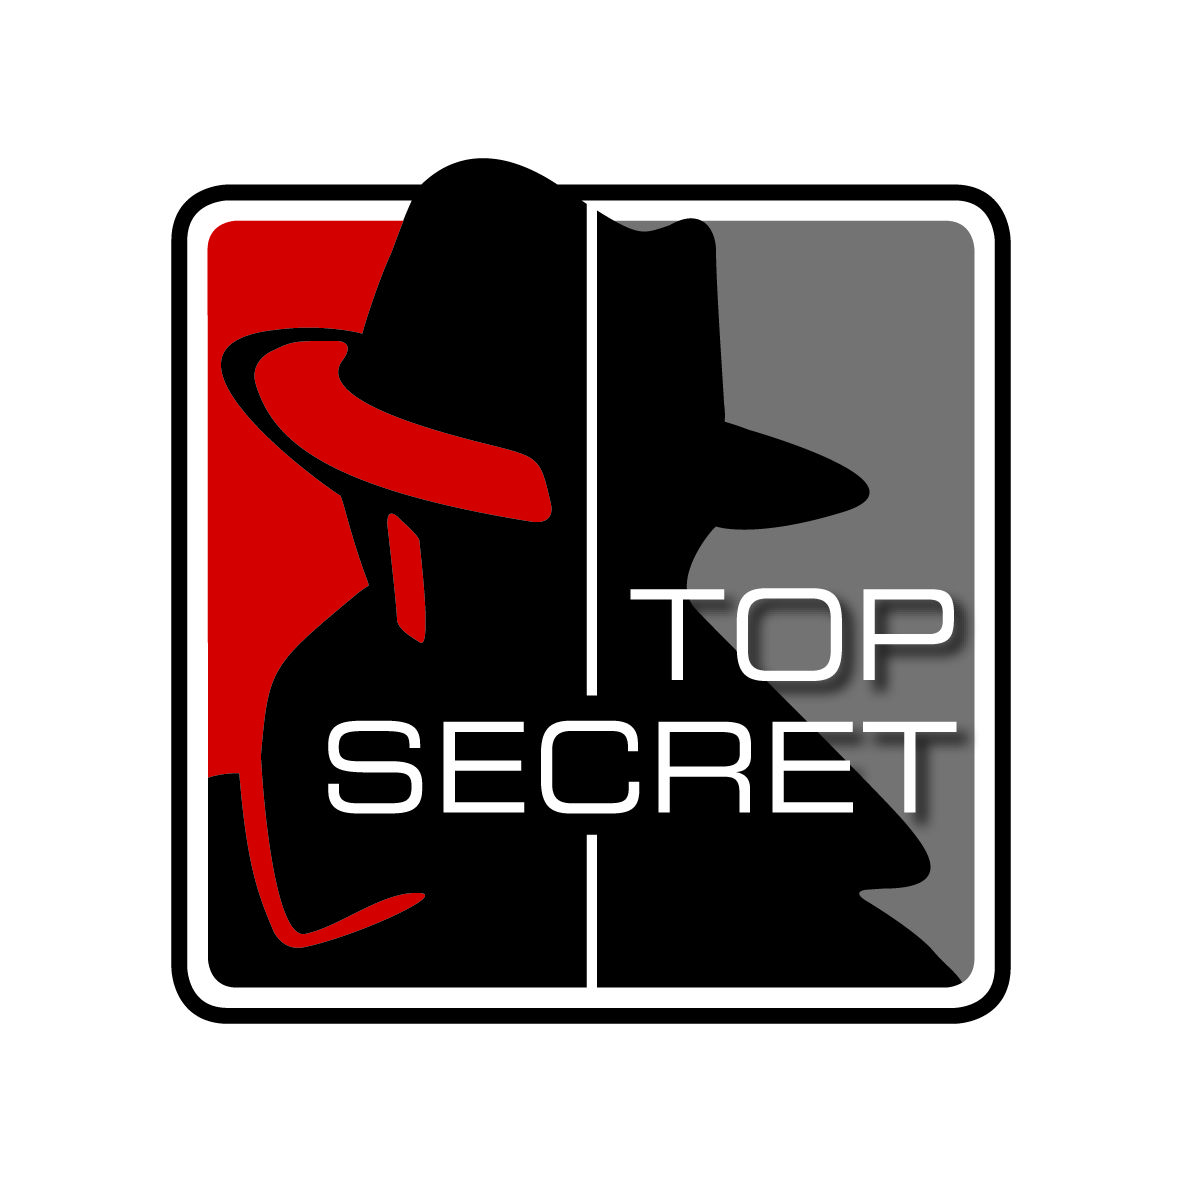 Top secret Logos